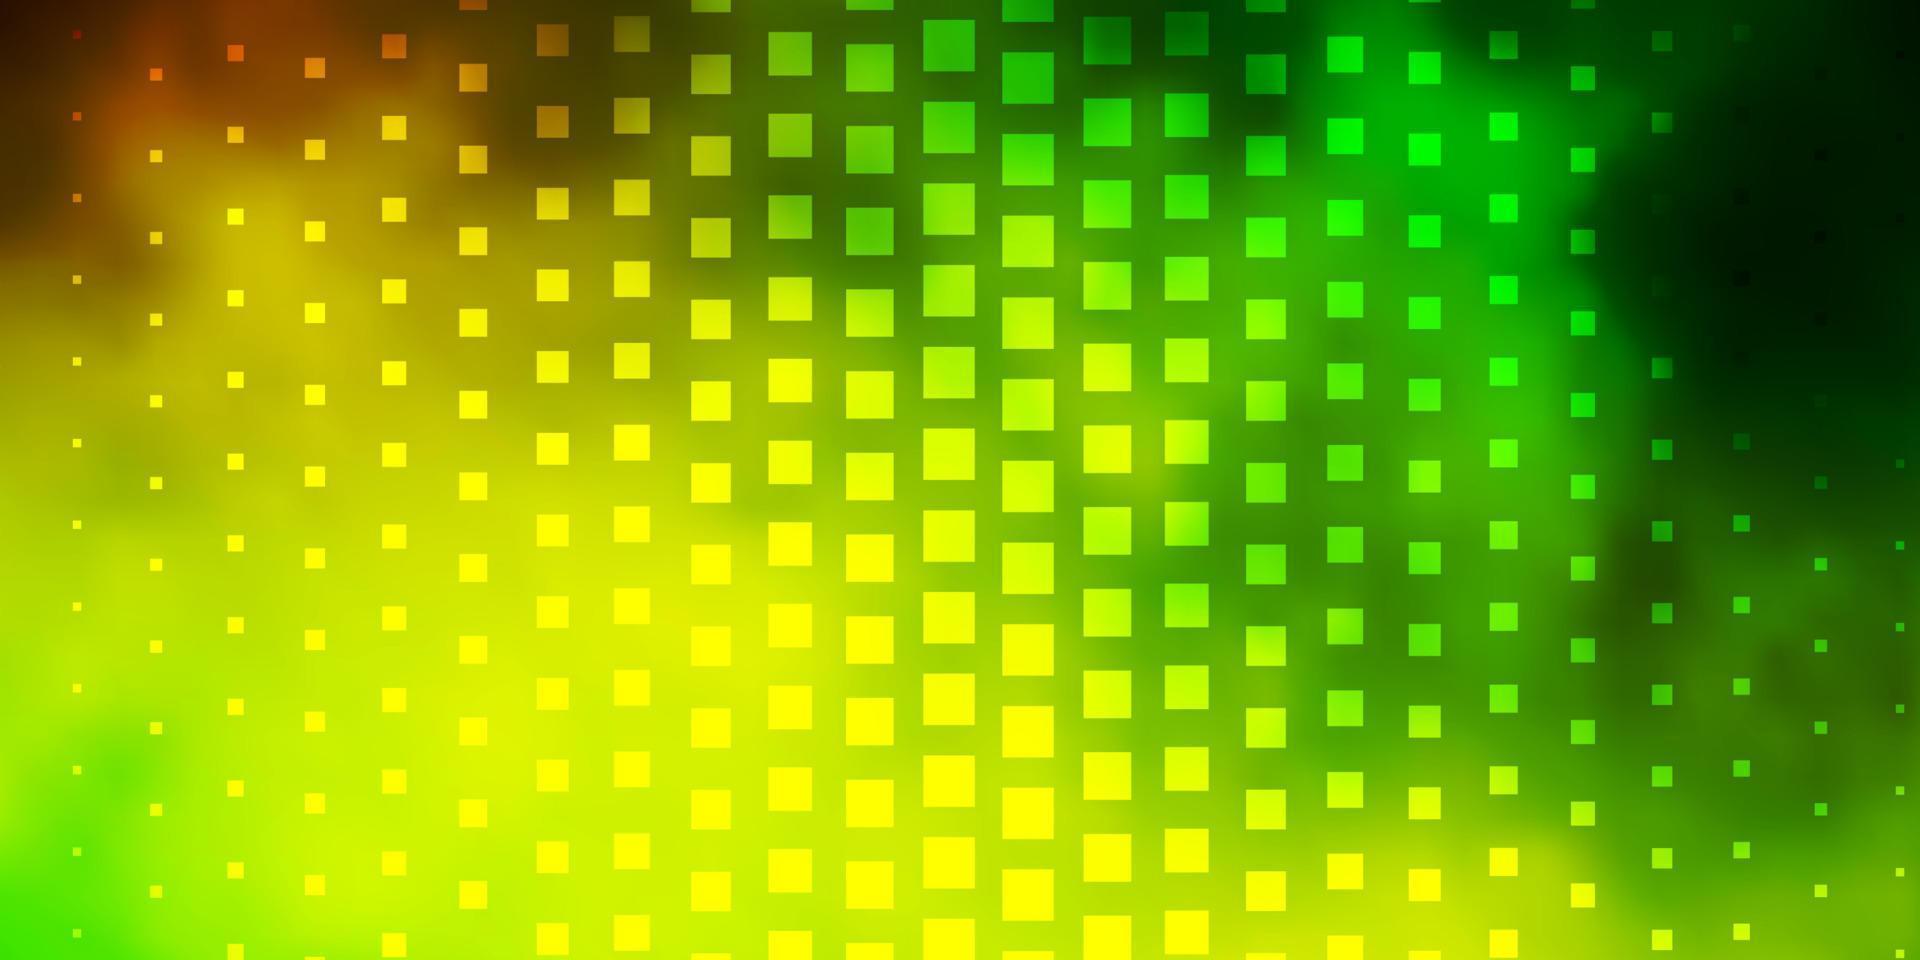 ljusgrön, gul vektormall i rektanglar. vektor